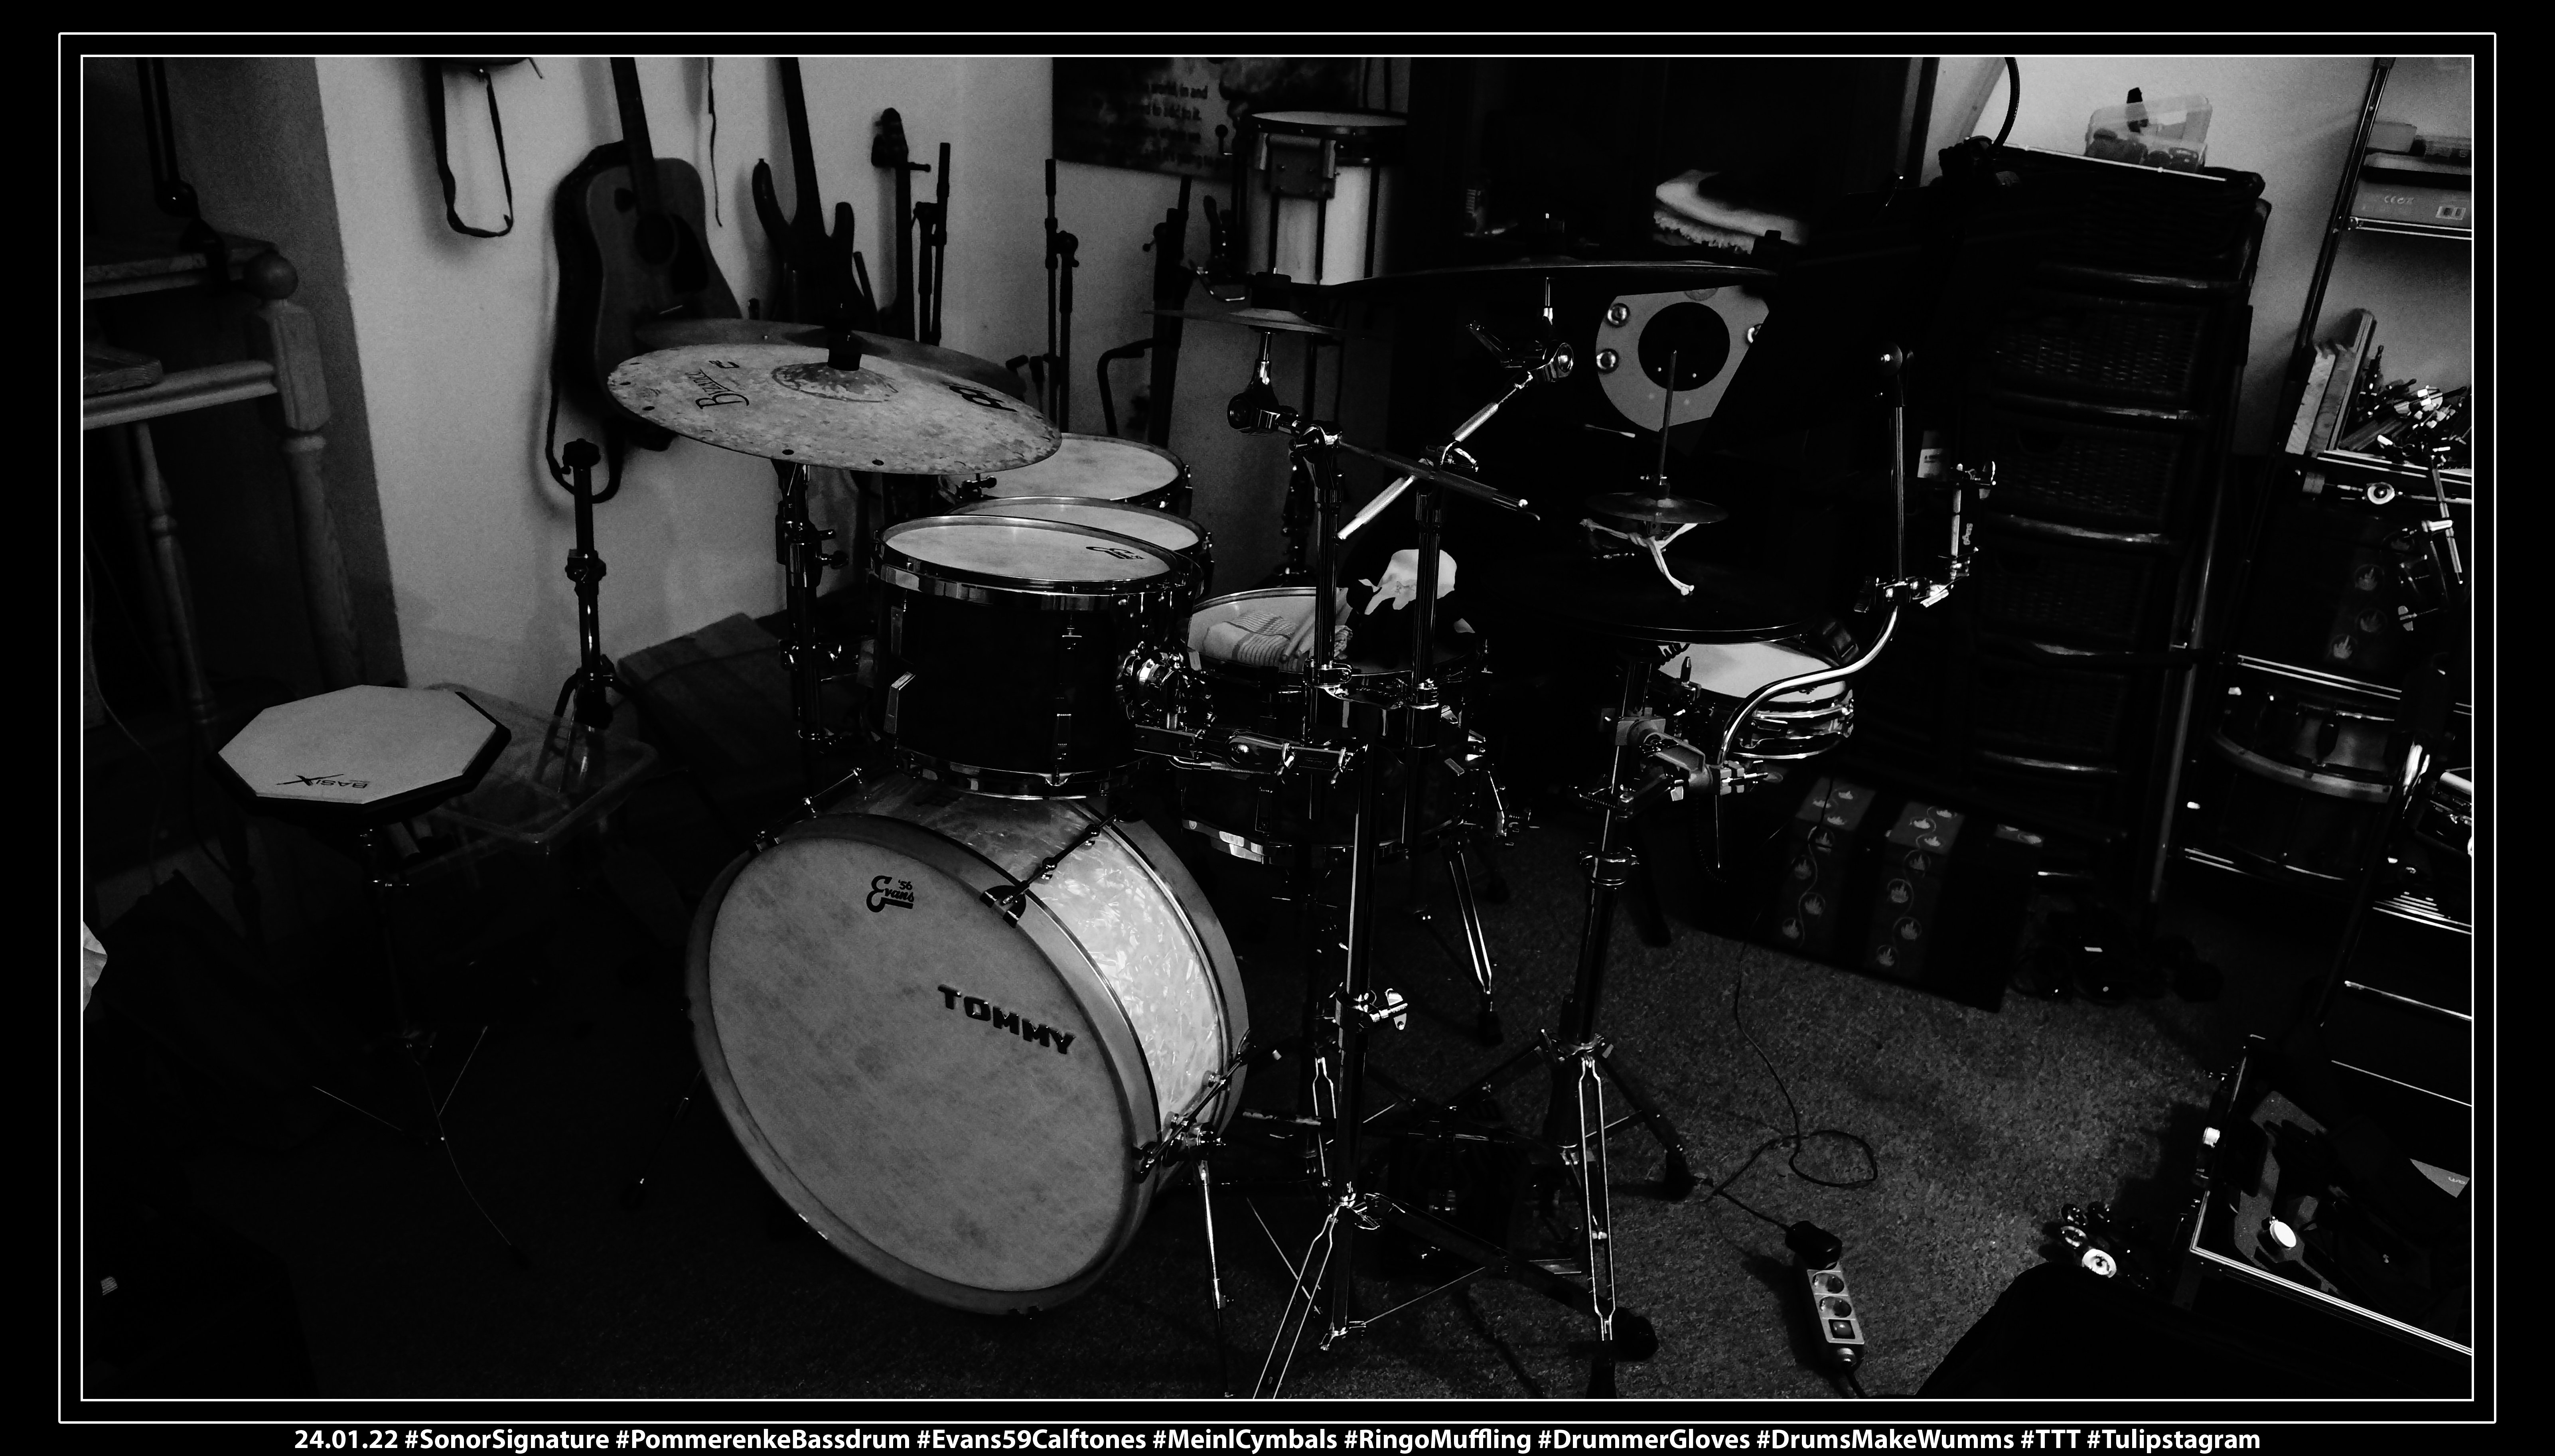 24.01.22 #SonorSignature #PommerenkeBassdrum #Evans59Calftones #MeinlCymbals #RingoMuffling #DrummerGloves #DrumsMakeWumms #TTT #Tulipstagram